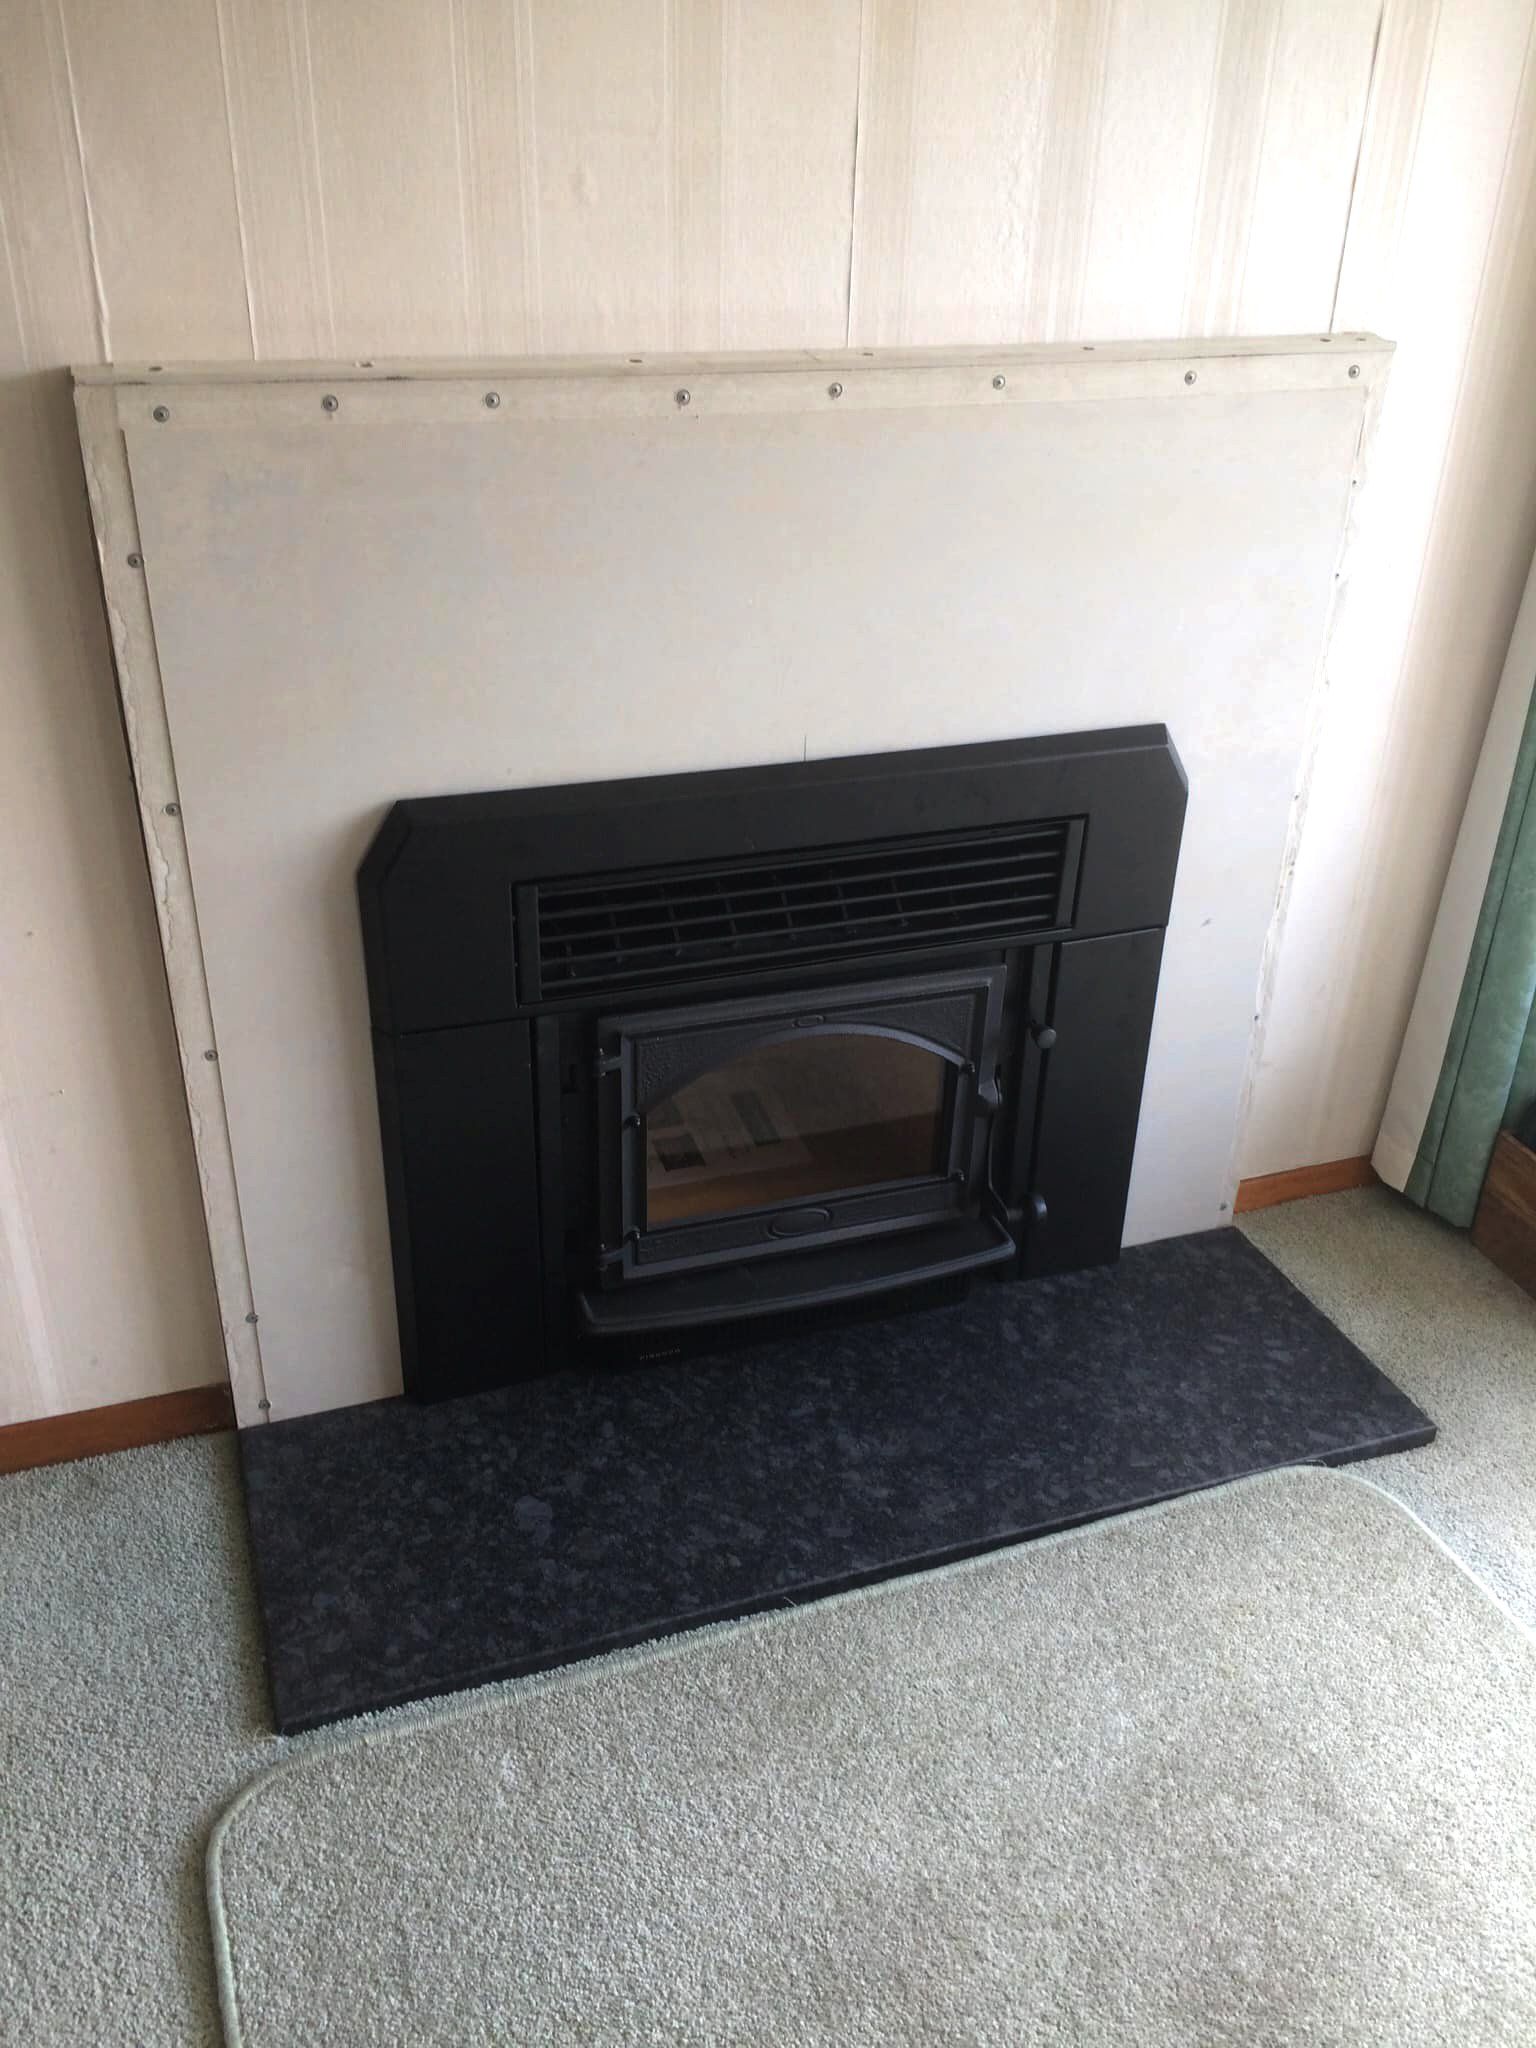 unbuilt fireplace - after